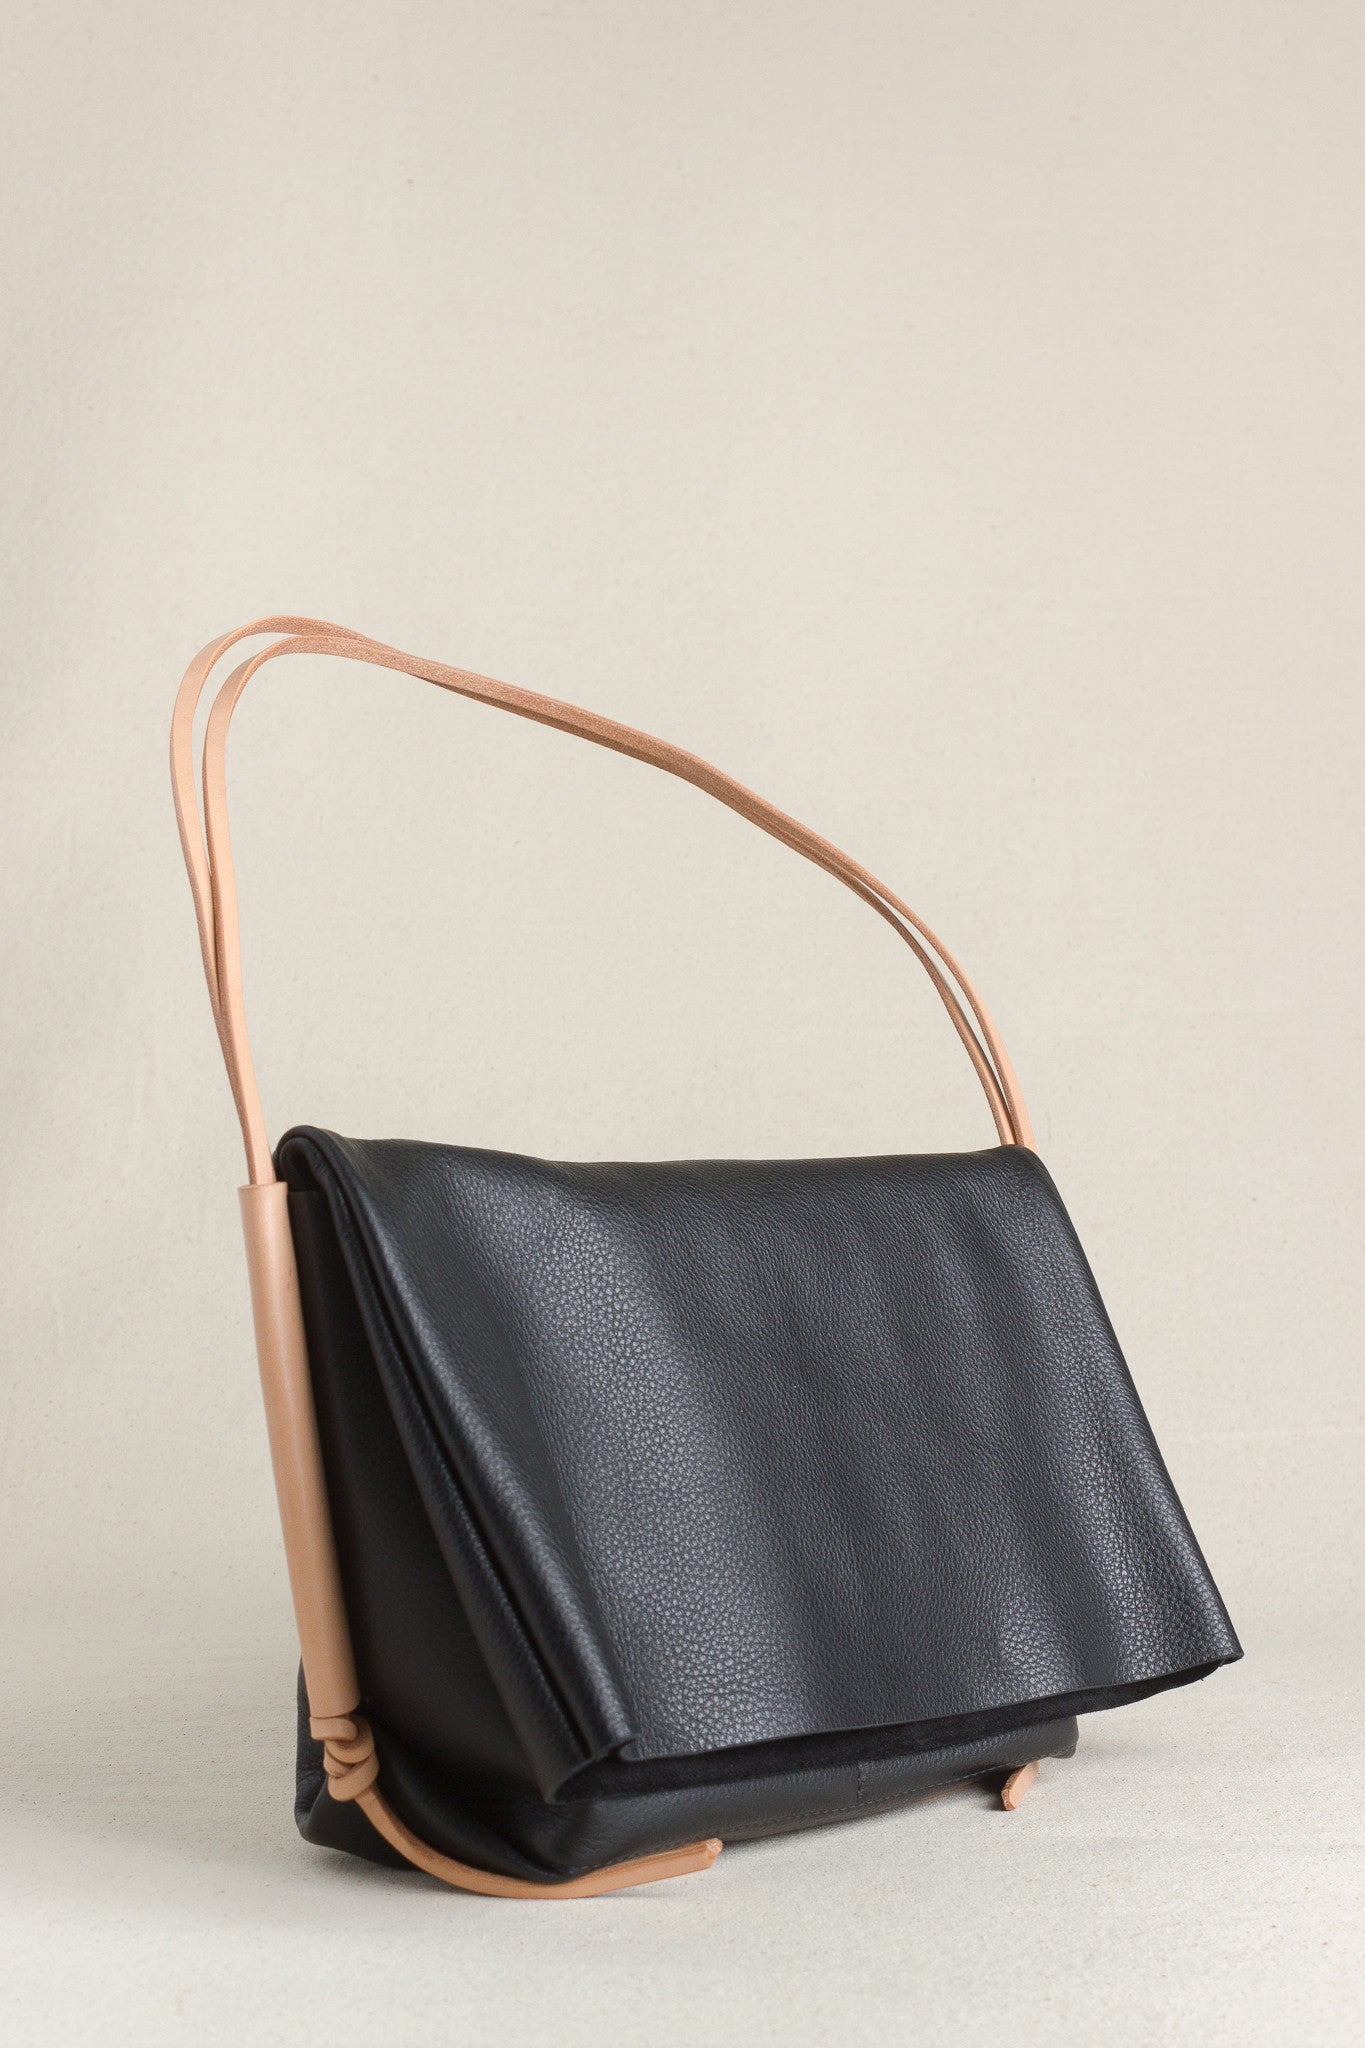 The Fold Bag in Black